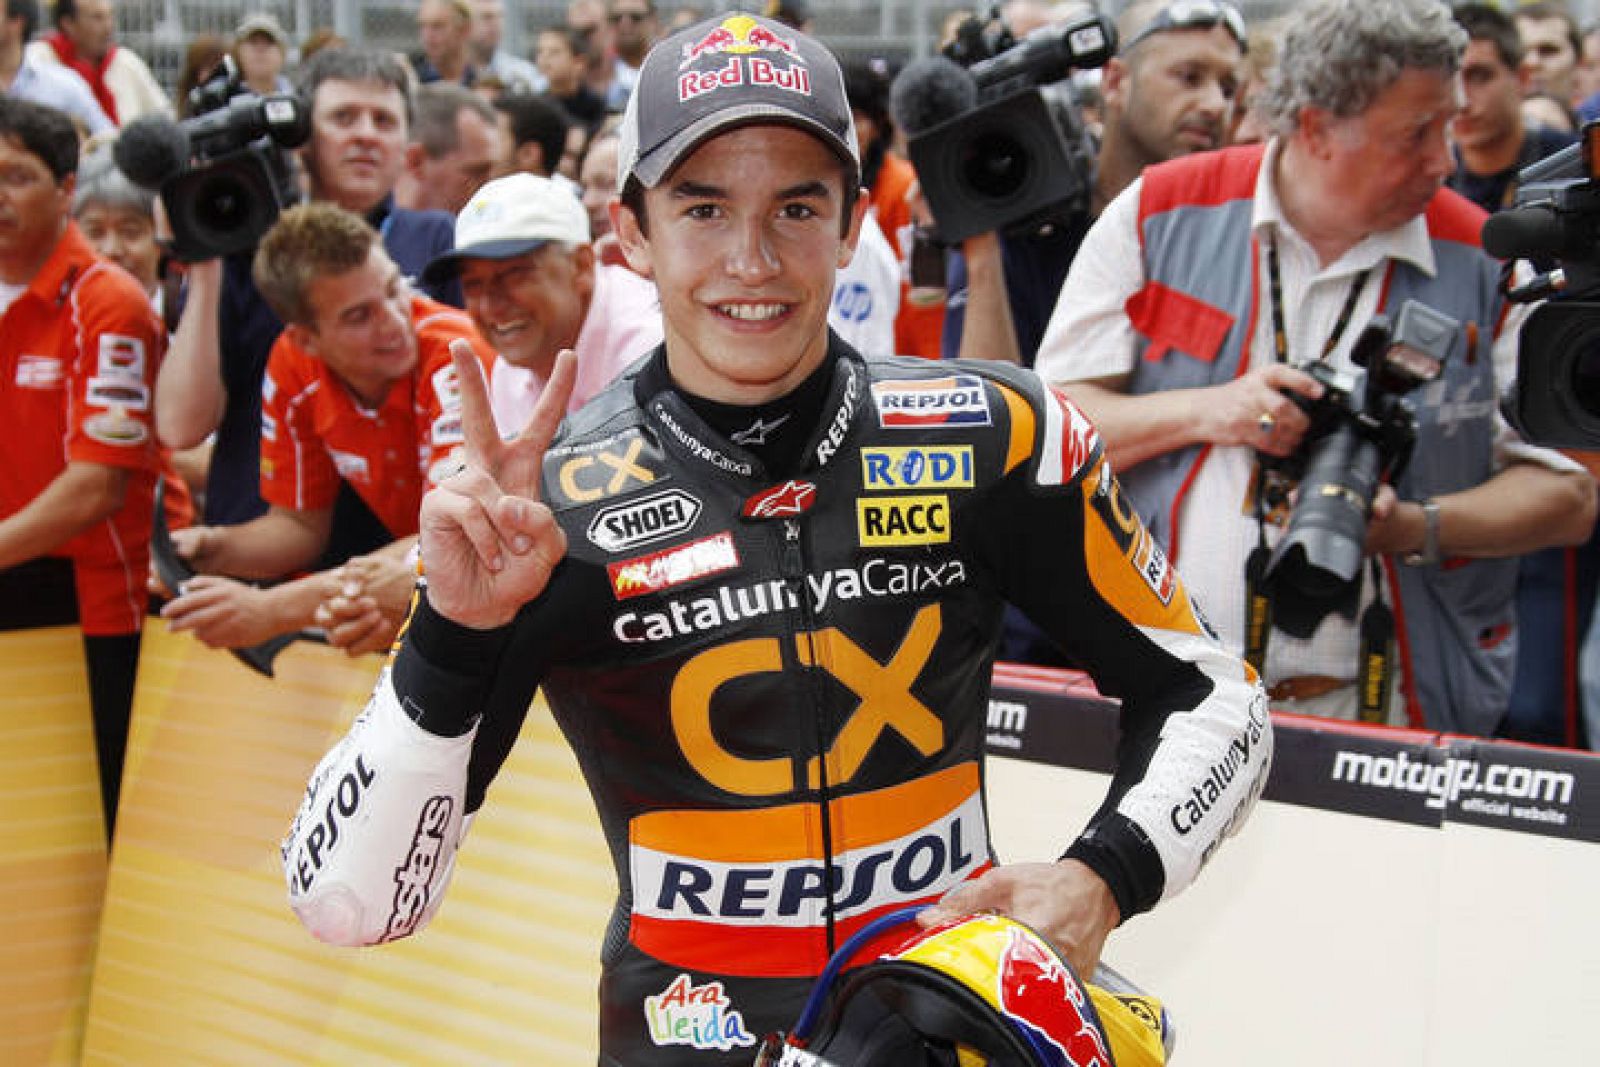 Márquez afronta con mucha ilusión el próximo Gran Premio de Alemania.